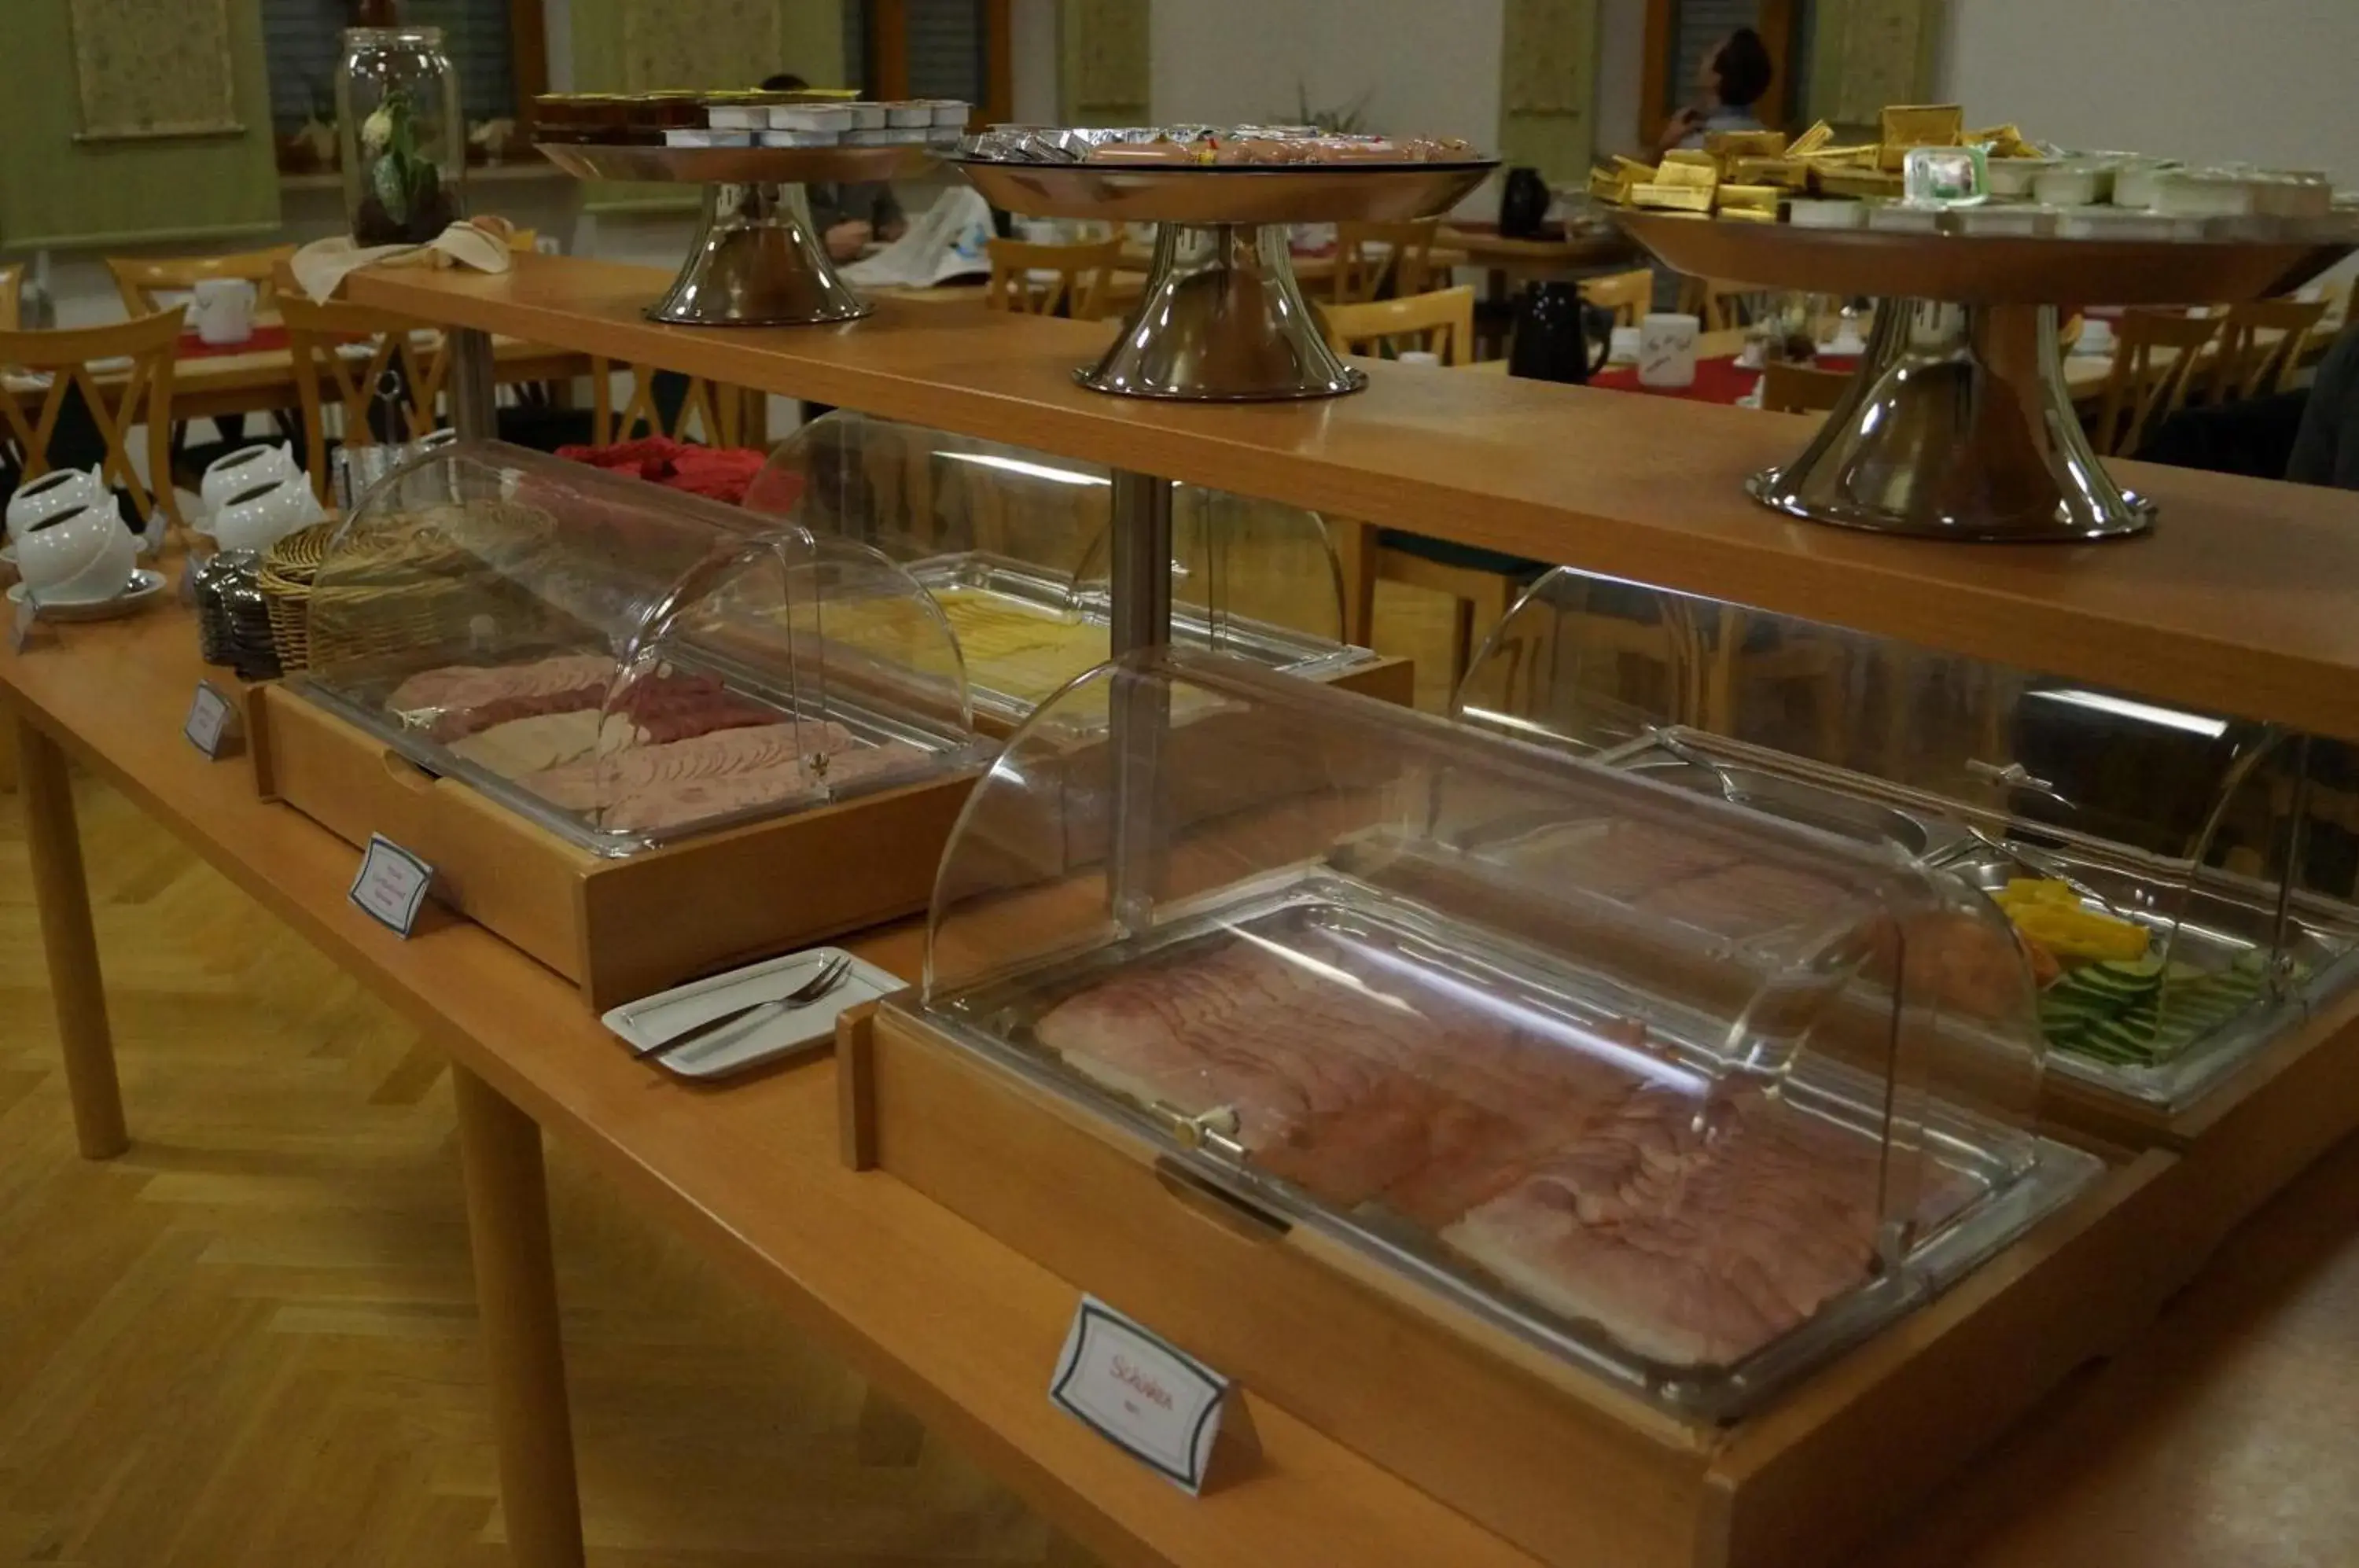 Buffet breakfast, Food in Kloster St. Josef